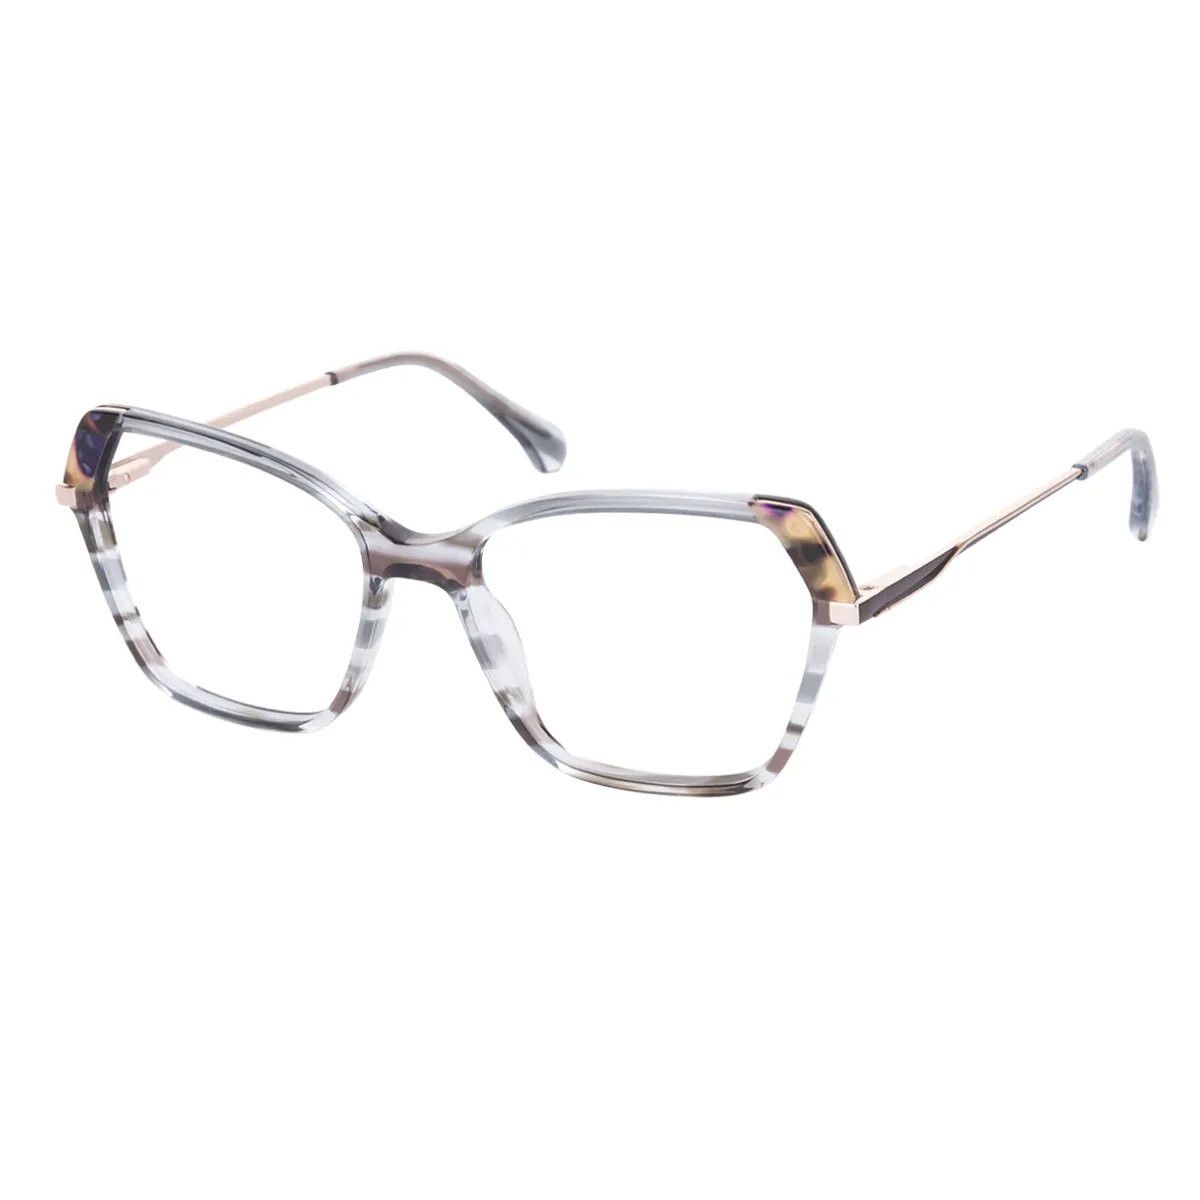 Chic - Square Tortoiseshell Glasses for Women - EFE